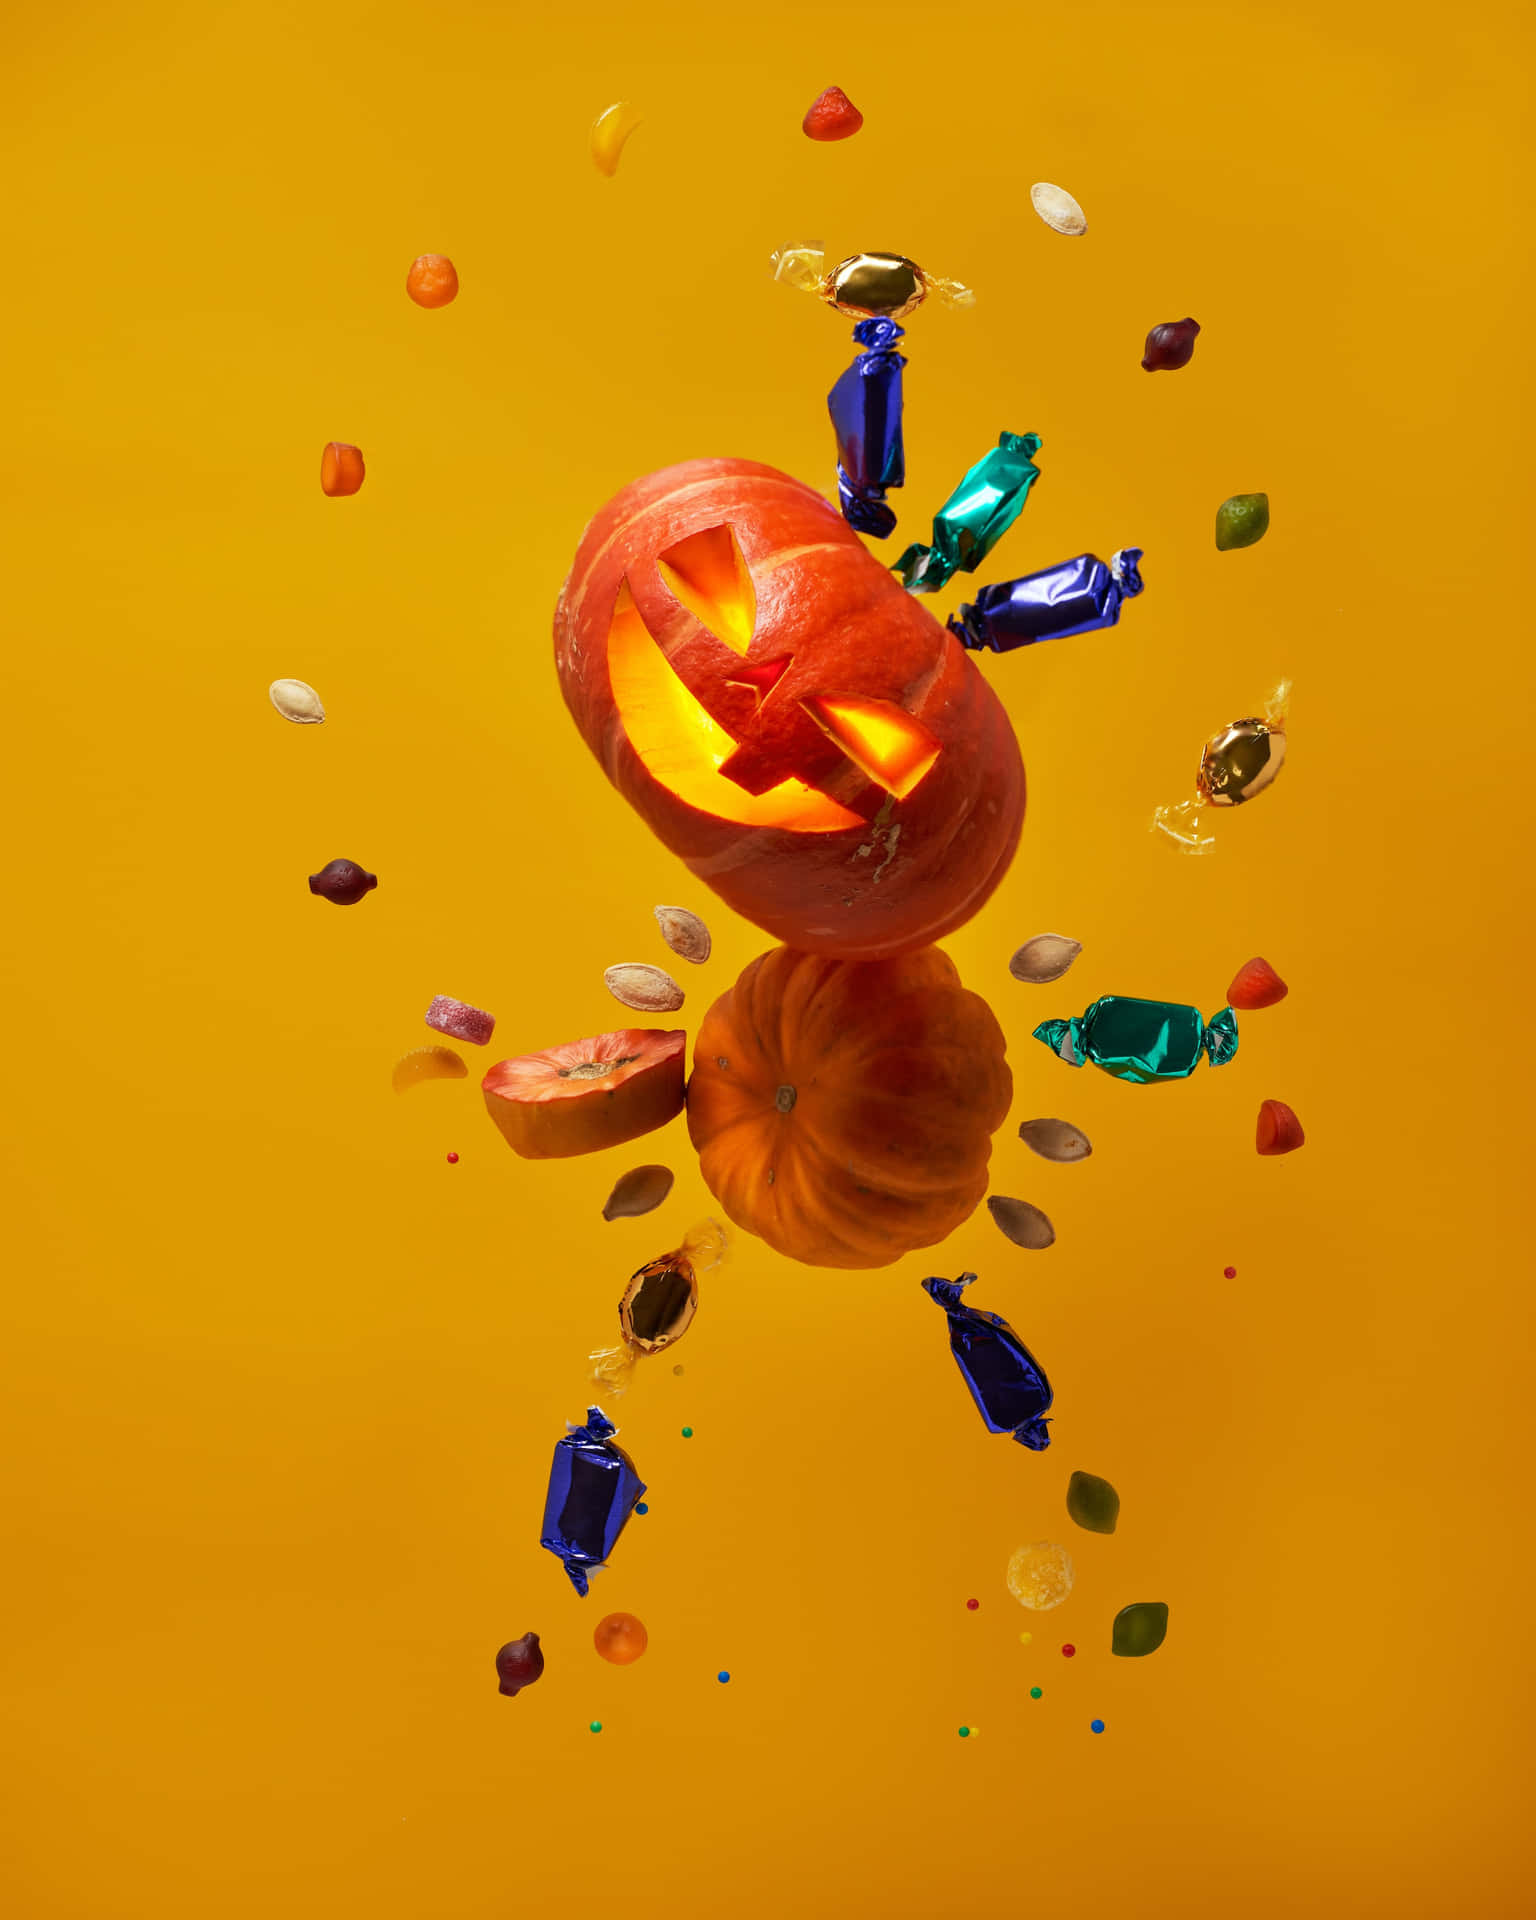 Hochauflösendeshalloween-hintergrundbild Mit Süßigkeiten